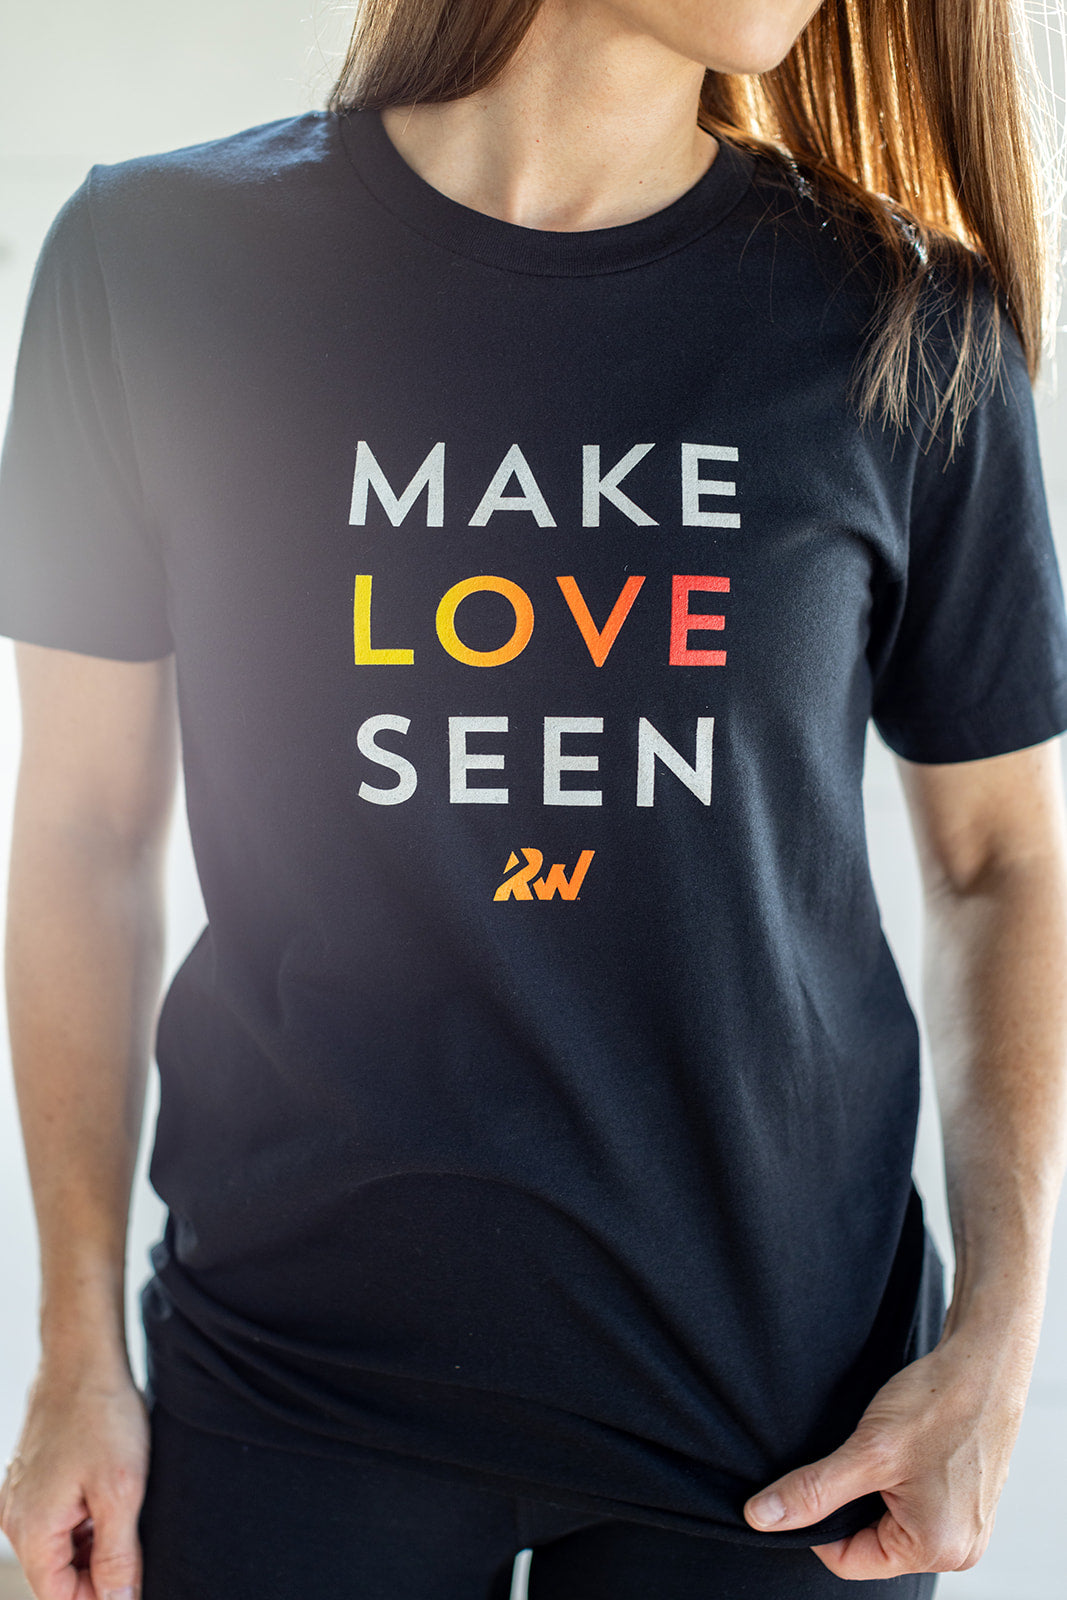 Make Love Seen Tee - 4XL only